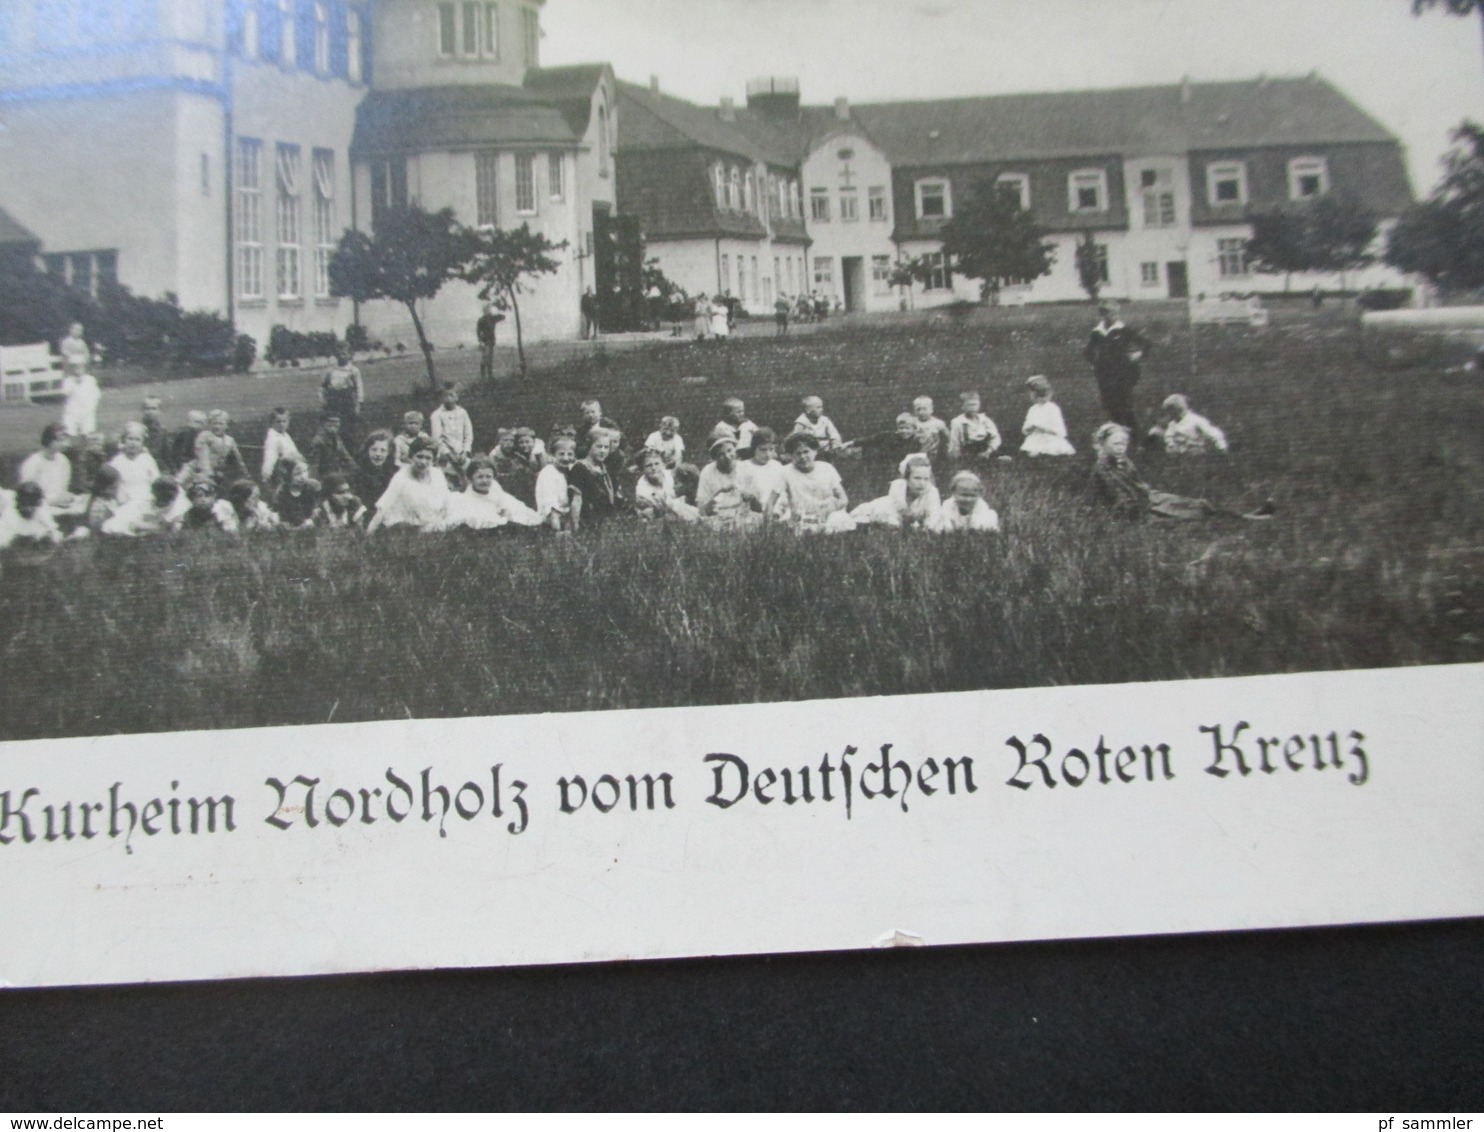 3.Reich Echtfoto AK Kindererholungs Und Kurheim Nordholz Vom Deutschen Roten Kreuz / DRK Nordholz Bei Cuxhaven - Croix-Rouge